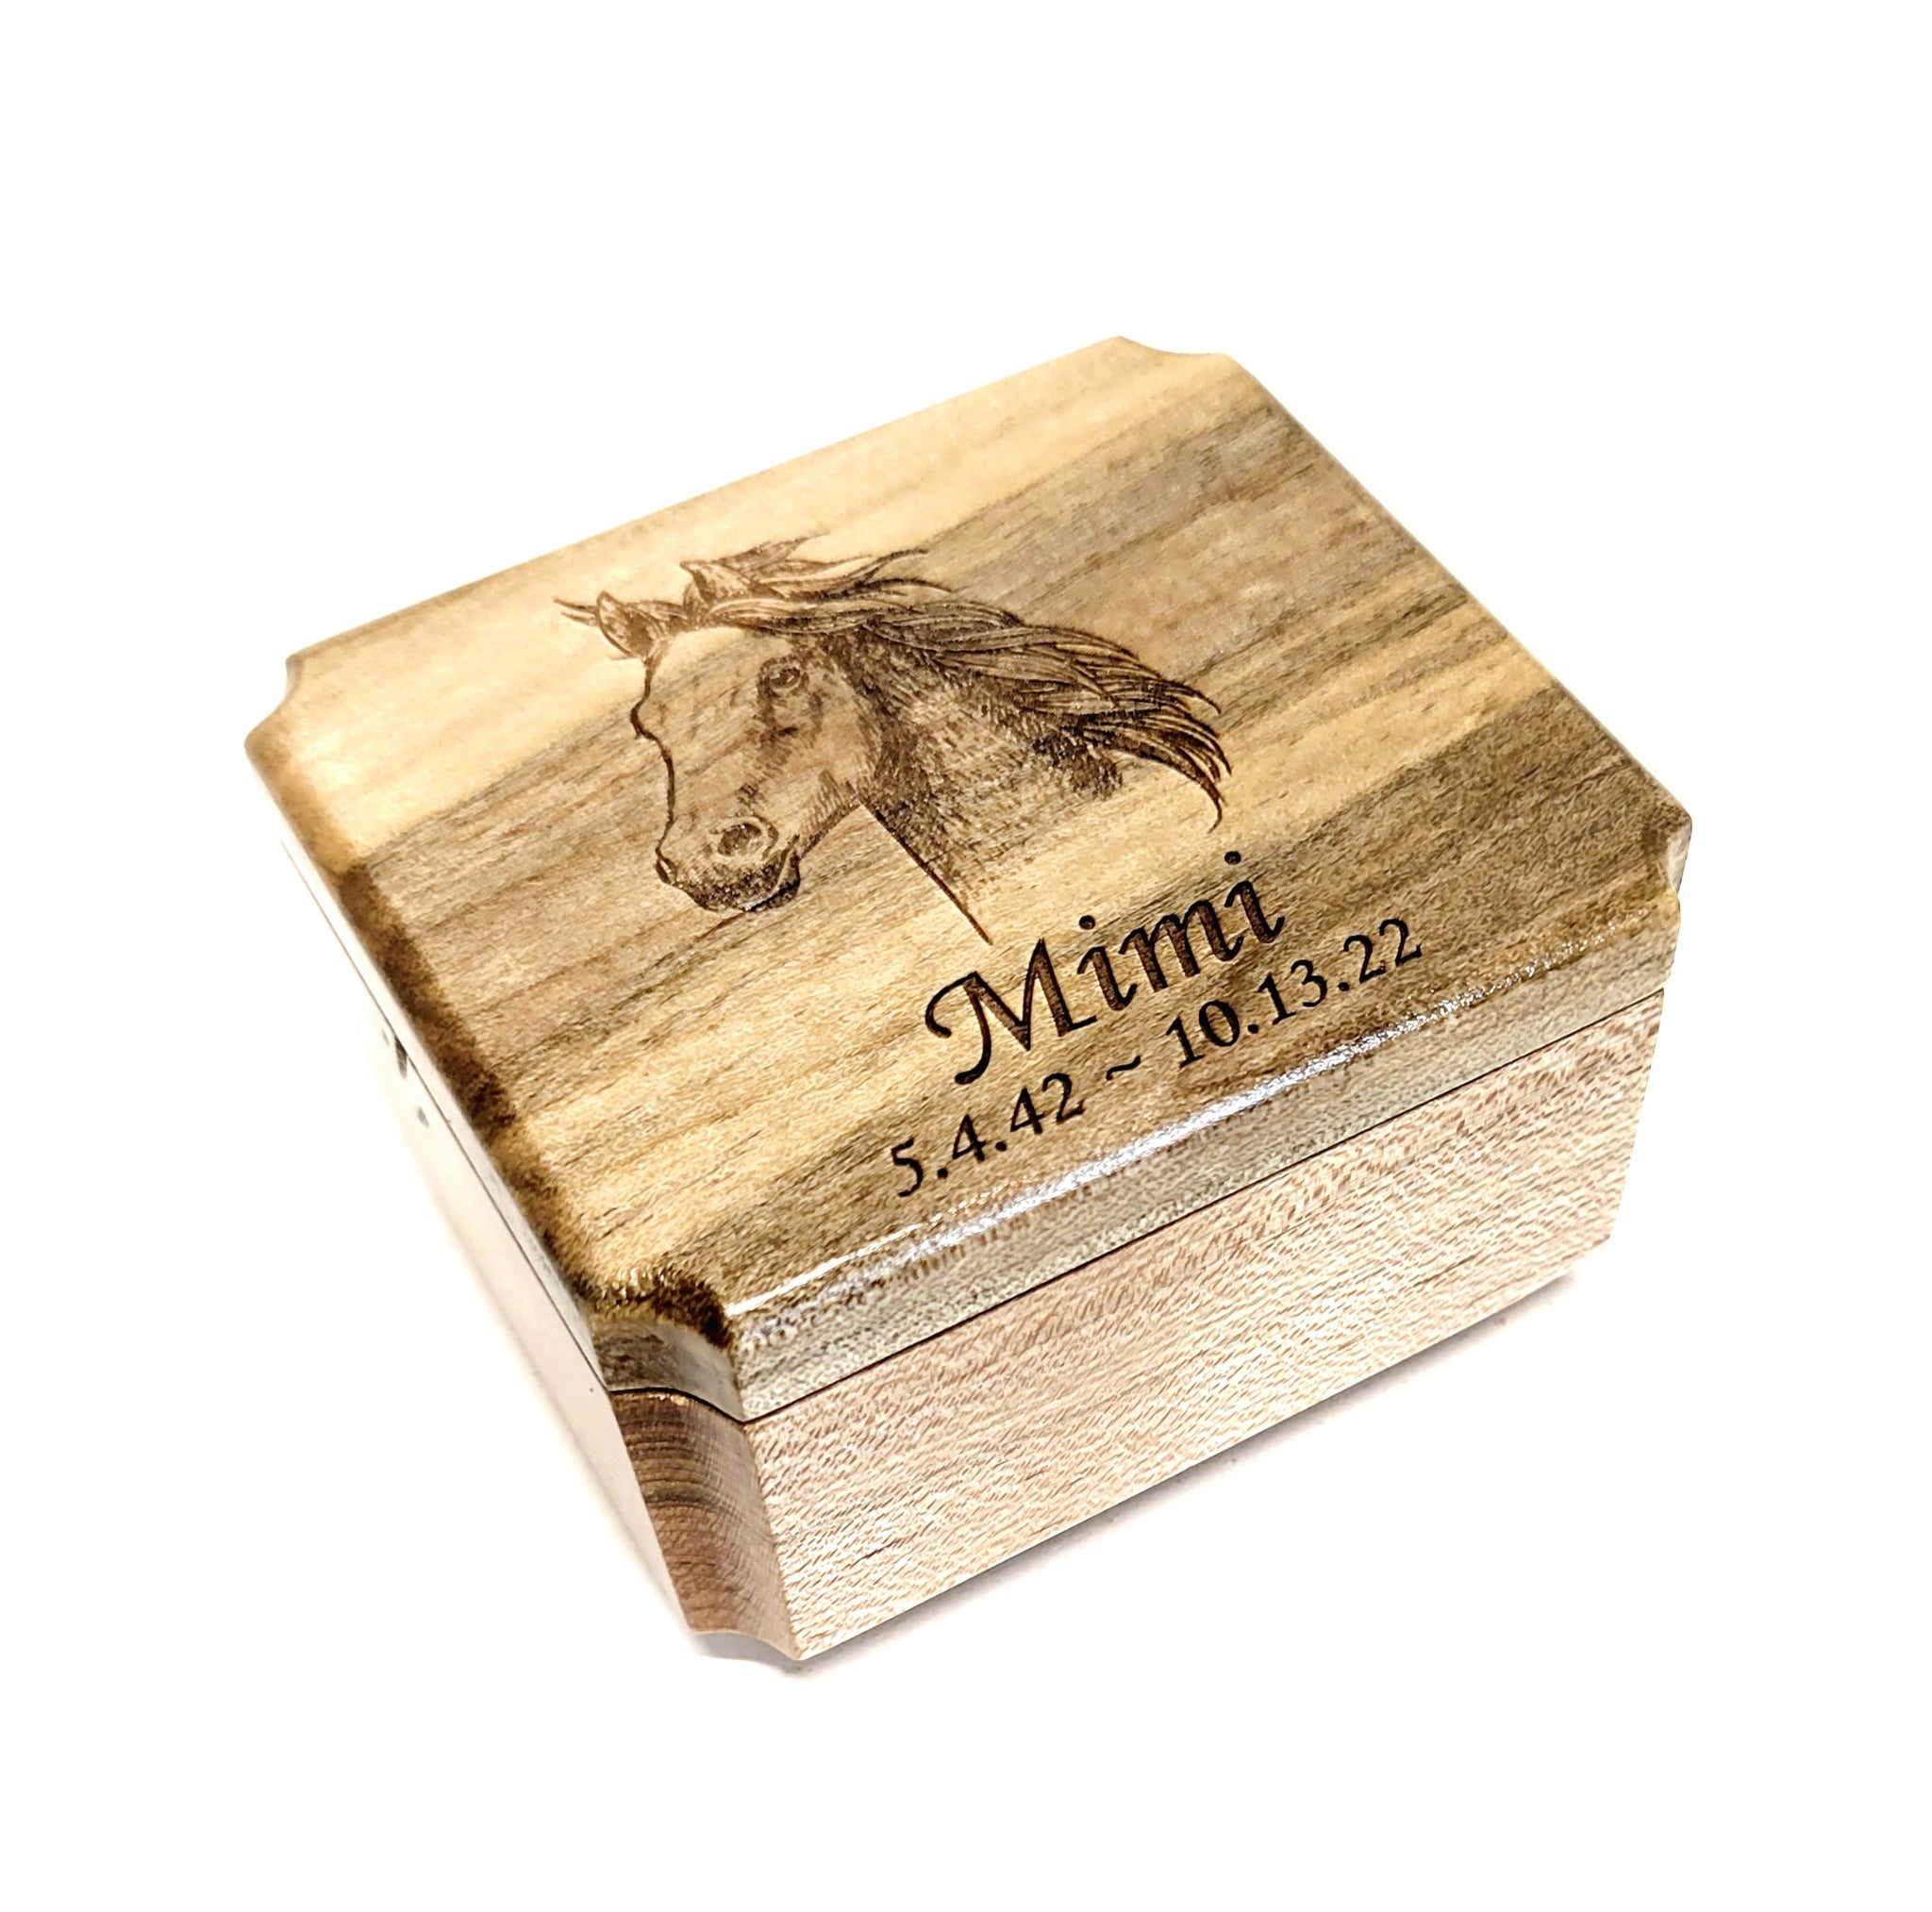 Engraved Handmade Personalized Horse Urn, Small Horse Lover Urn, Sharable Urn, Pocket Urn, Rememberance Urn, Horse Lover Urn